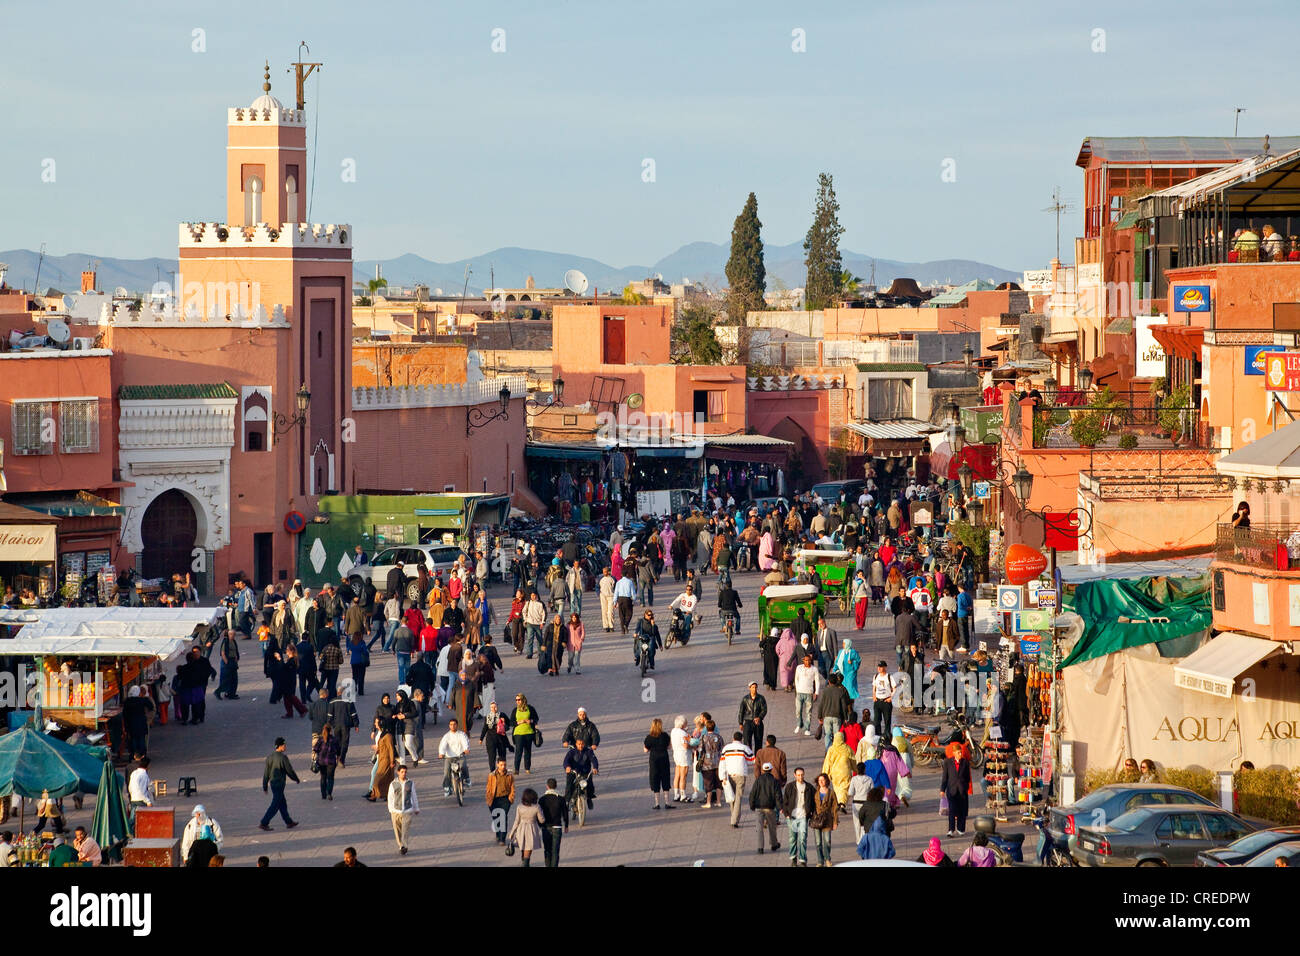 Les gens en place Djemaa El Fna, la médina, vieille ville, site du patrimoine mondial de l'UNESCO, Marrakech, Maroc, Afrique Banque D'Images